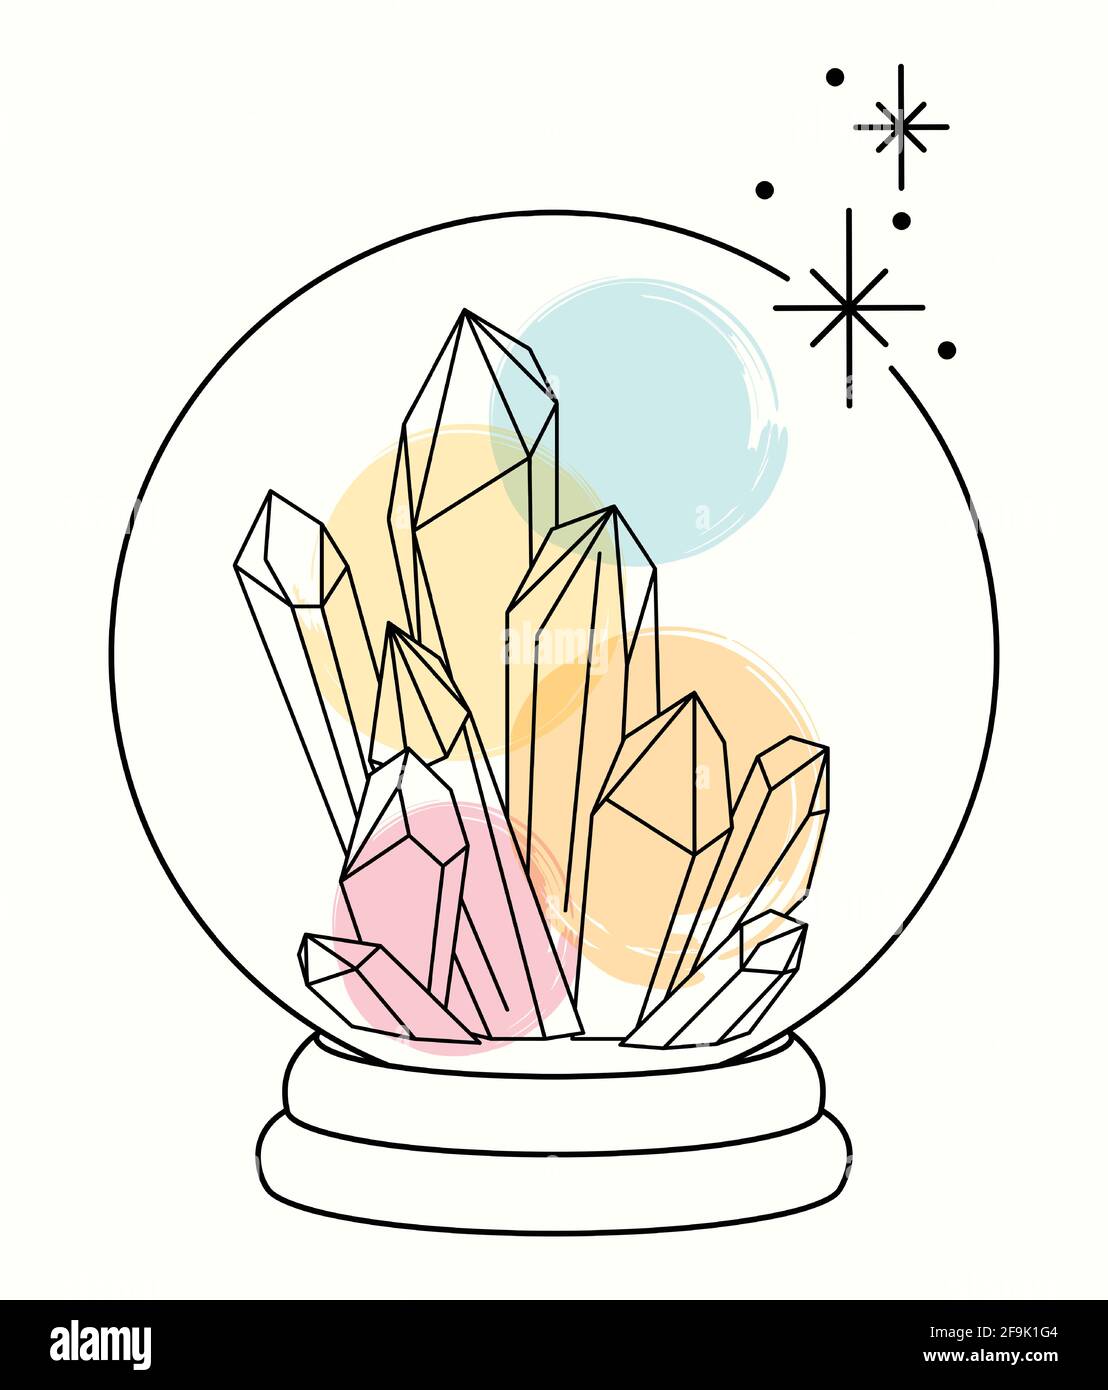 Linea d'arte con macchie acquerello guarigione cristalli magici in un sfera di cristallo Illustrazione Vettoriale